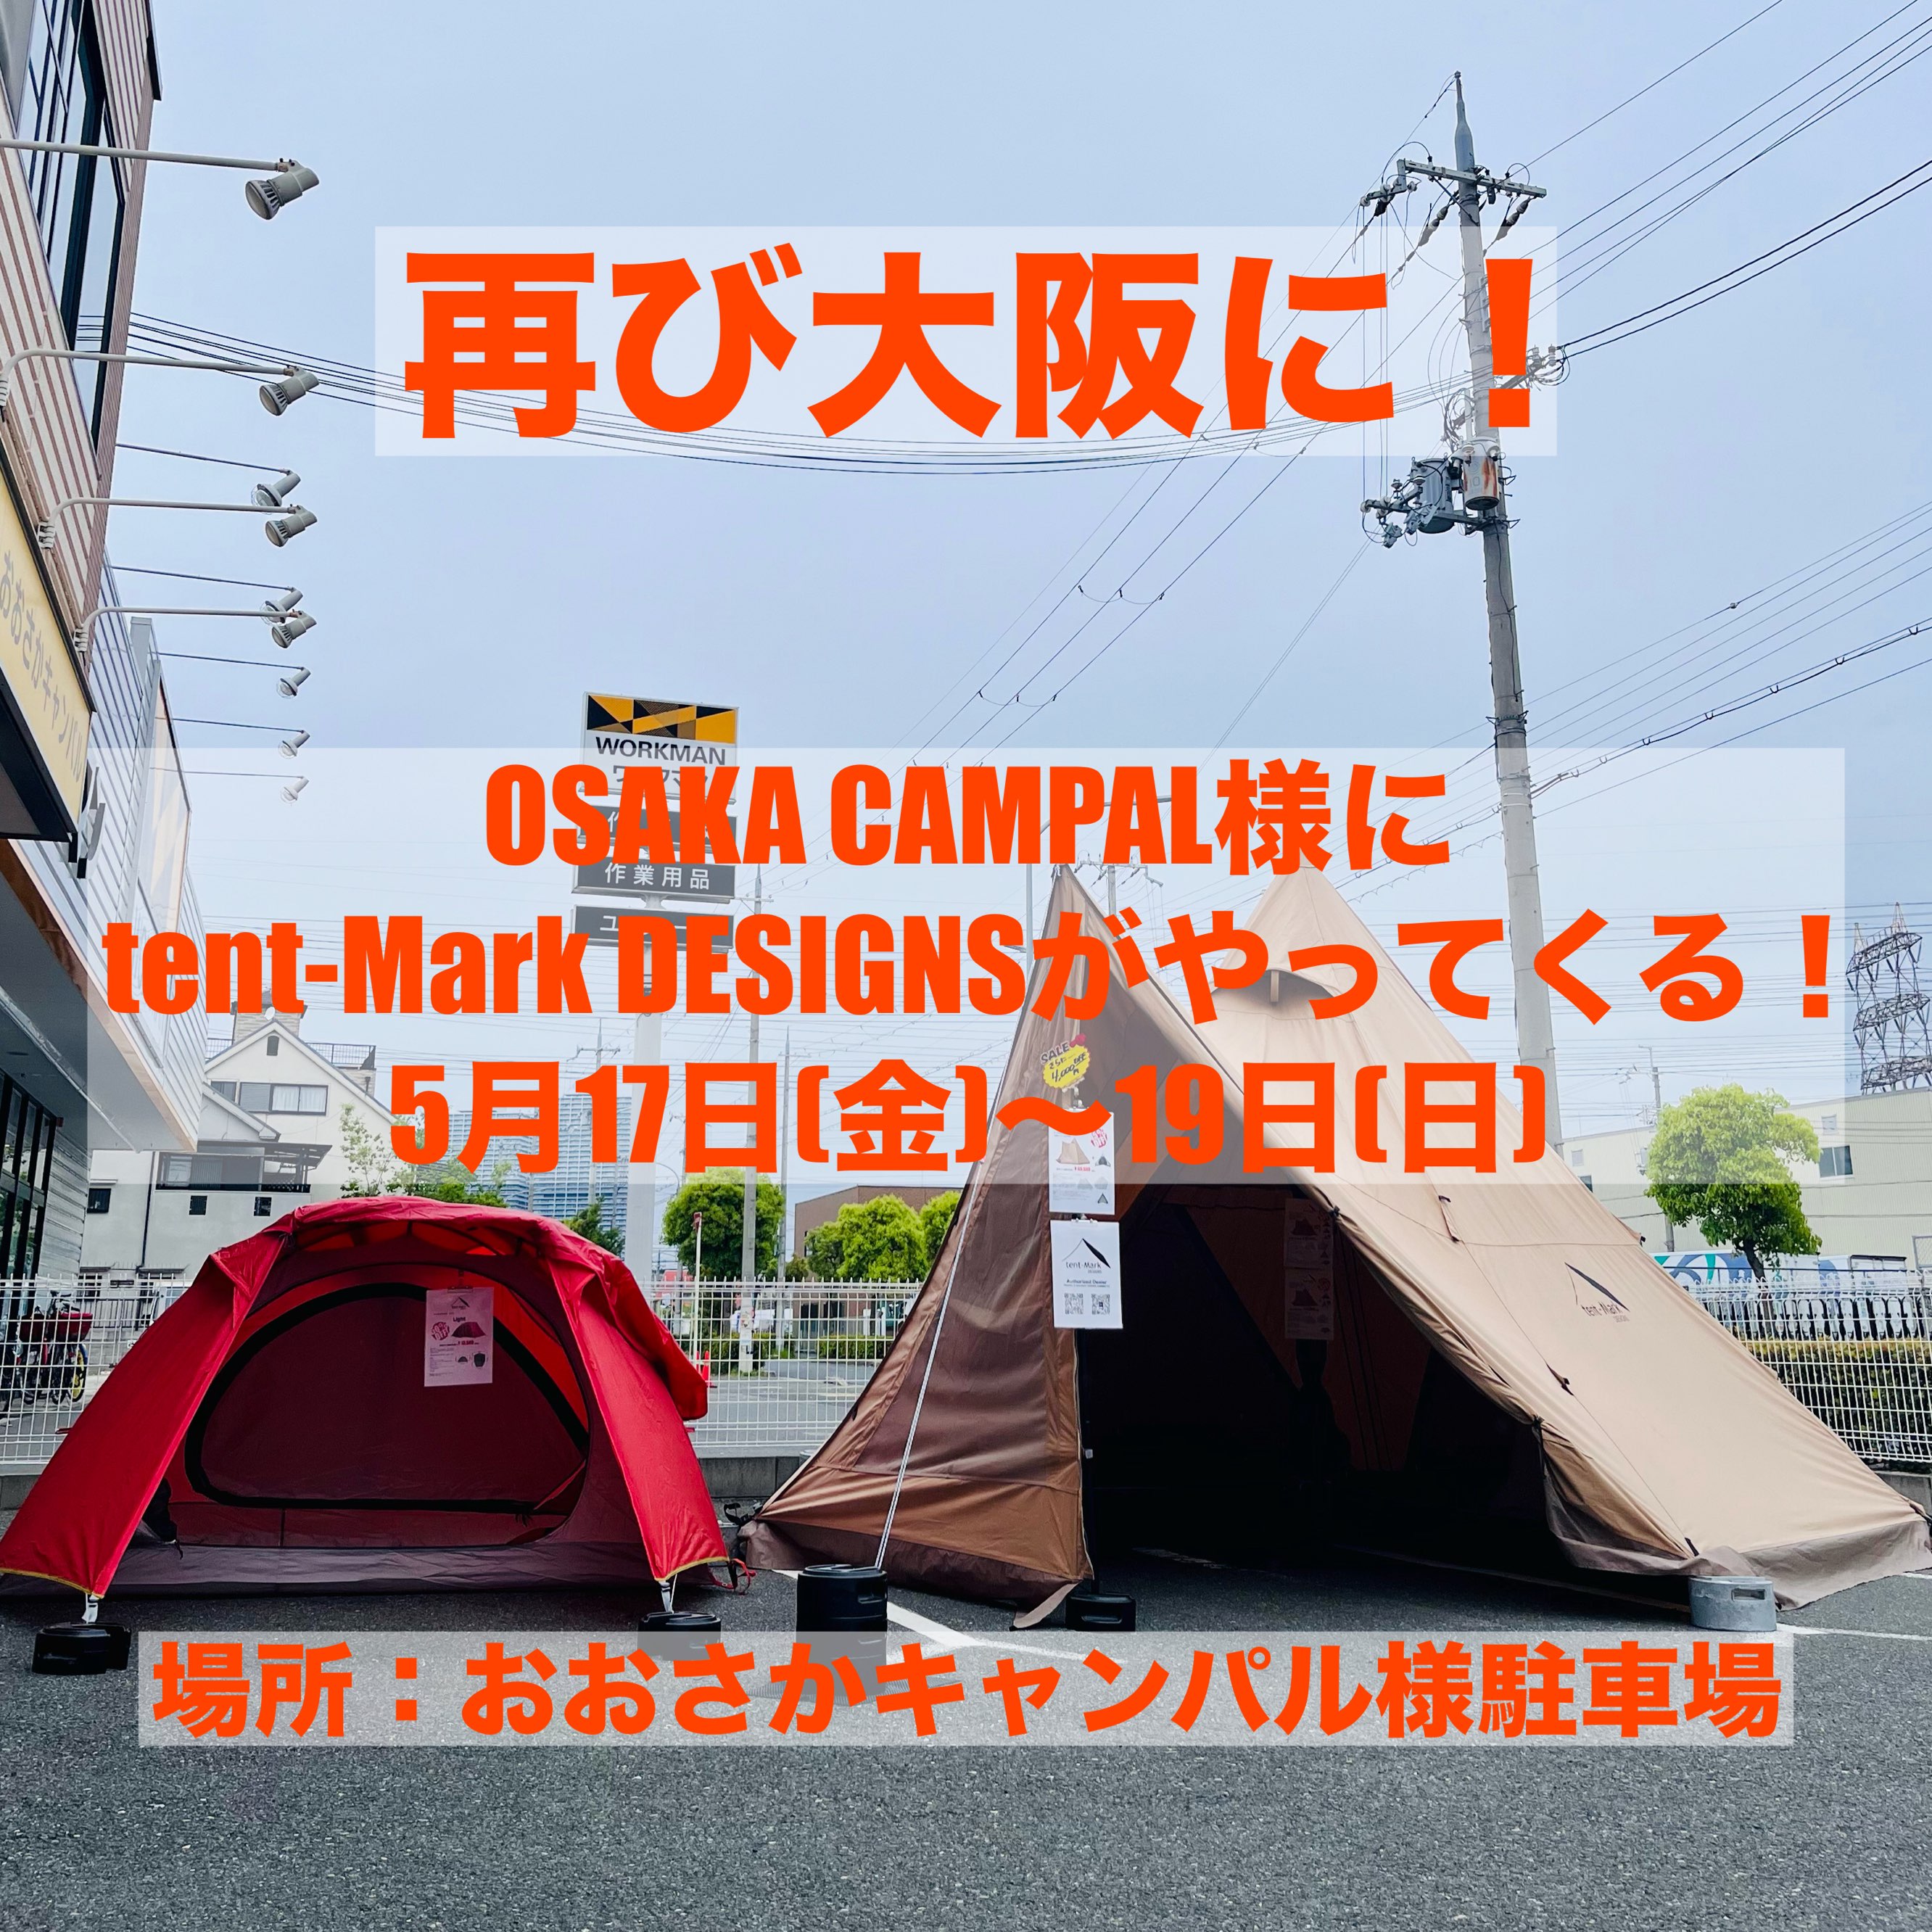 大阪再上陸！ 再びおおさかキャンパル様に tent-Mark DESIGNSのテントがやってきます！